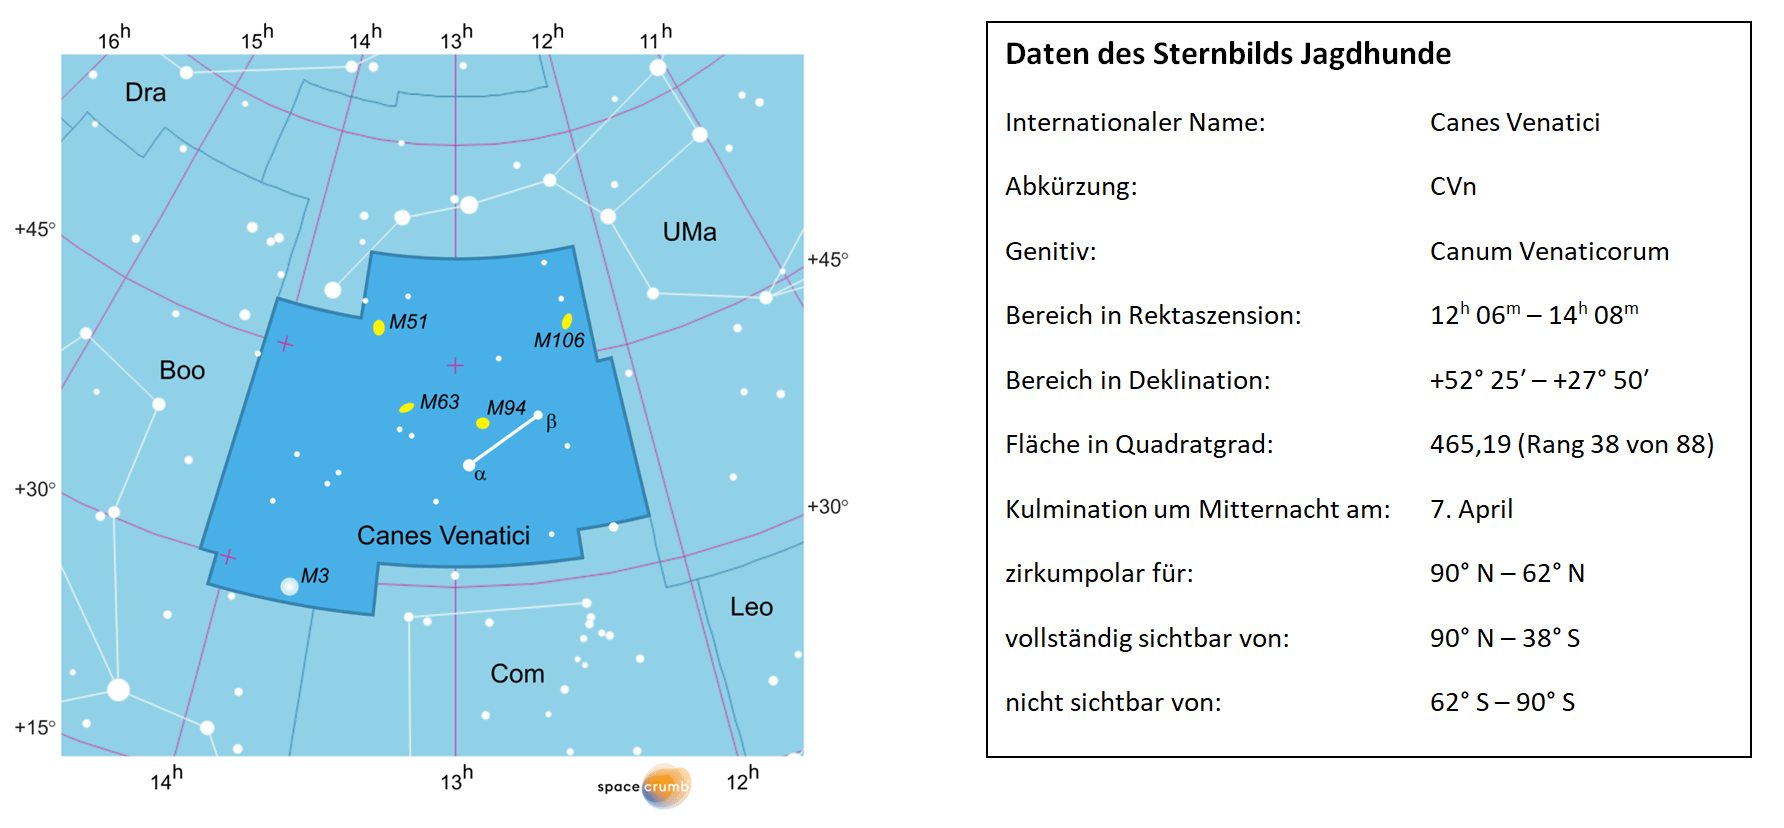 Links zeigt eine mit Koordinaten versehene Karte eines Himmelsausschnitts weiße Sterne auf hellblauem Hintergrund. Die Fläche, die das Sternbild Jagdhunde einnimmt, ist dunkelblau hervorgehoben. Eine Tabelle rechts gibt wichtige Daten des Sternbilds an.